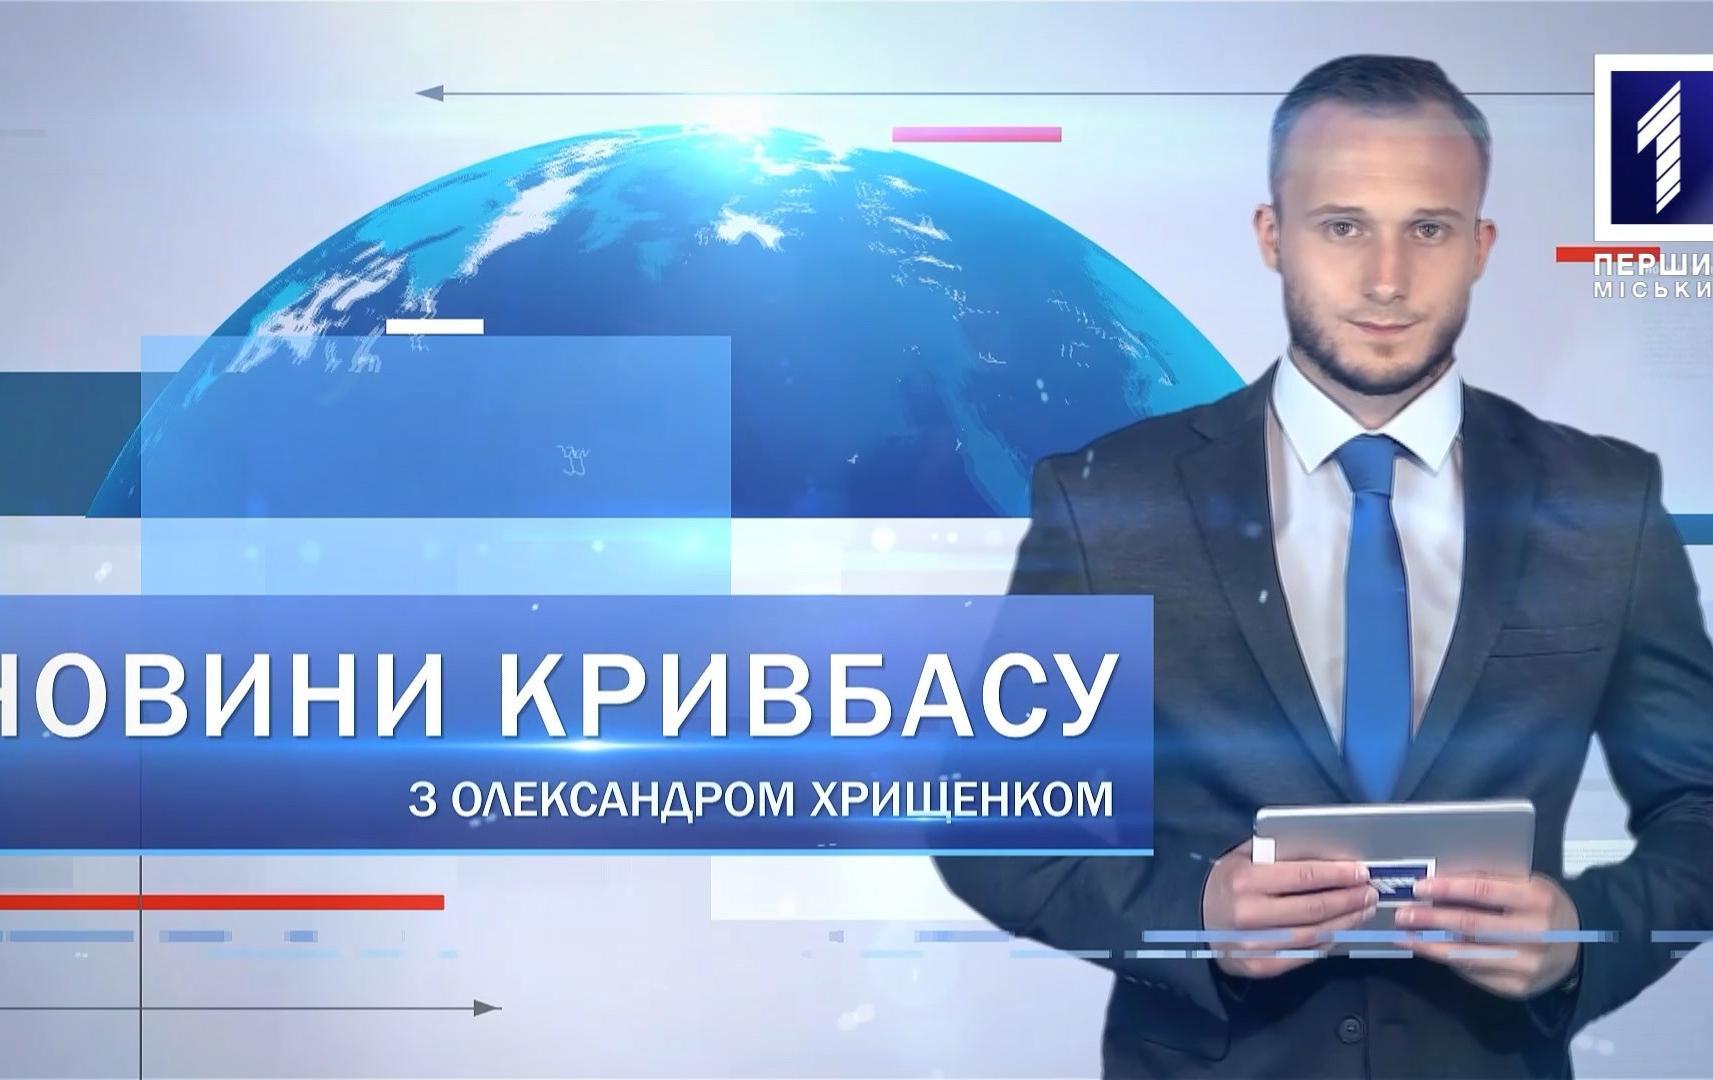 Новости Кривбасса 2 ноября: акция «подвези медика», «заминировали» аэропорт, автовышка